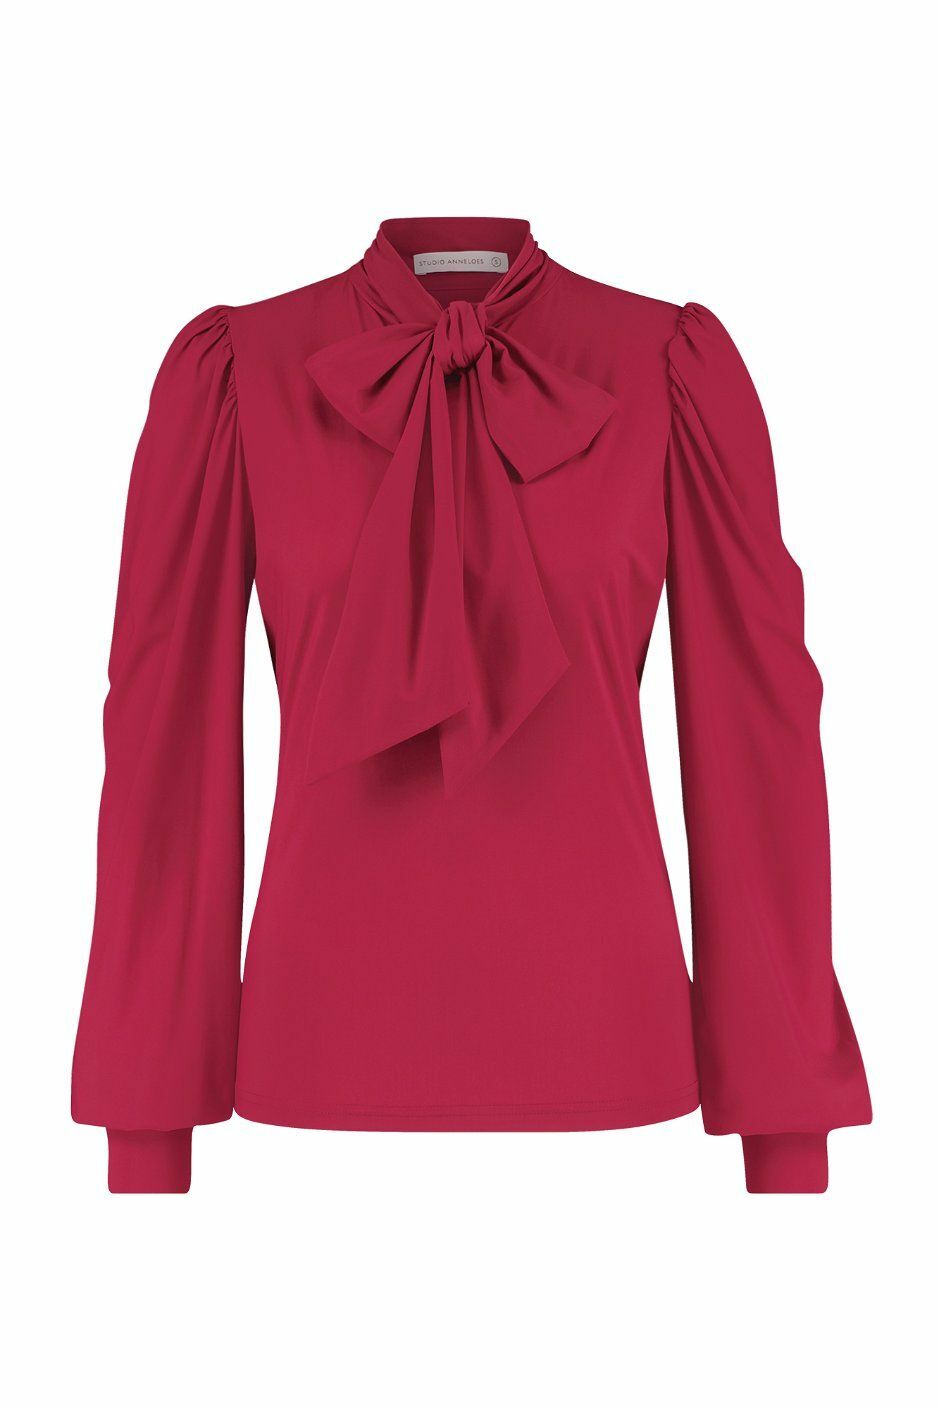 haar schot bruiloft Studio Anneloes Donna blouse diep rood online kopen bij Carriera Damesmode.  06628-3700